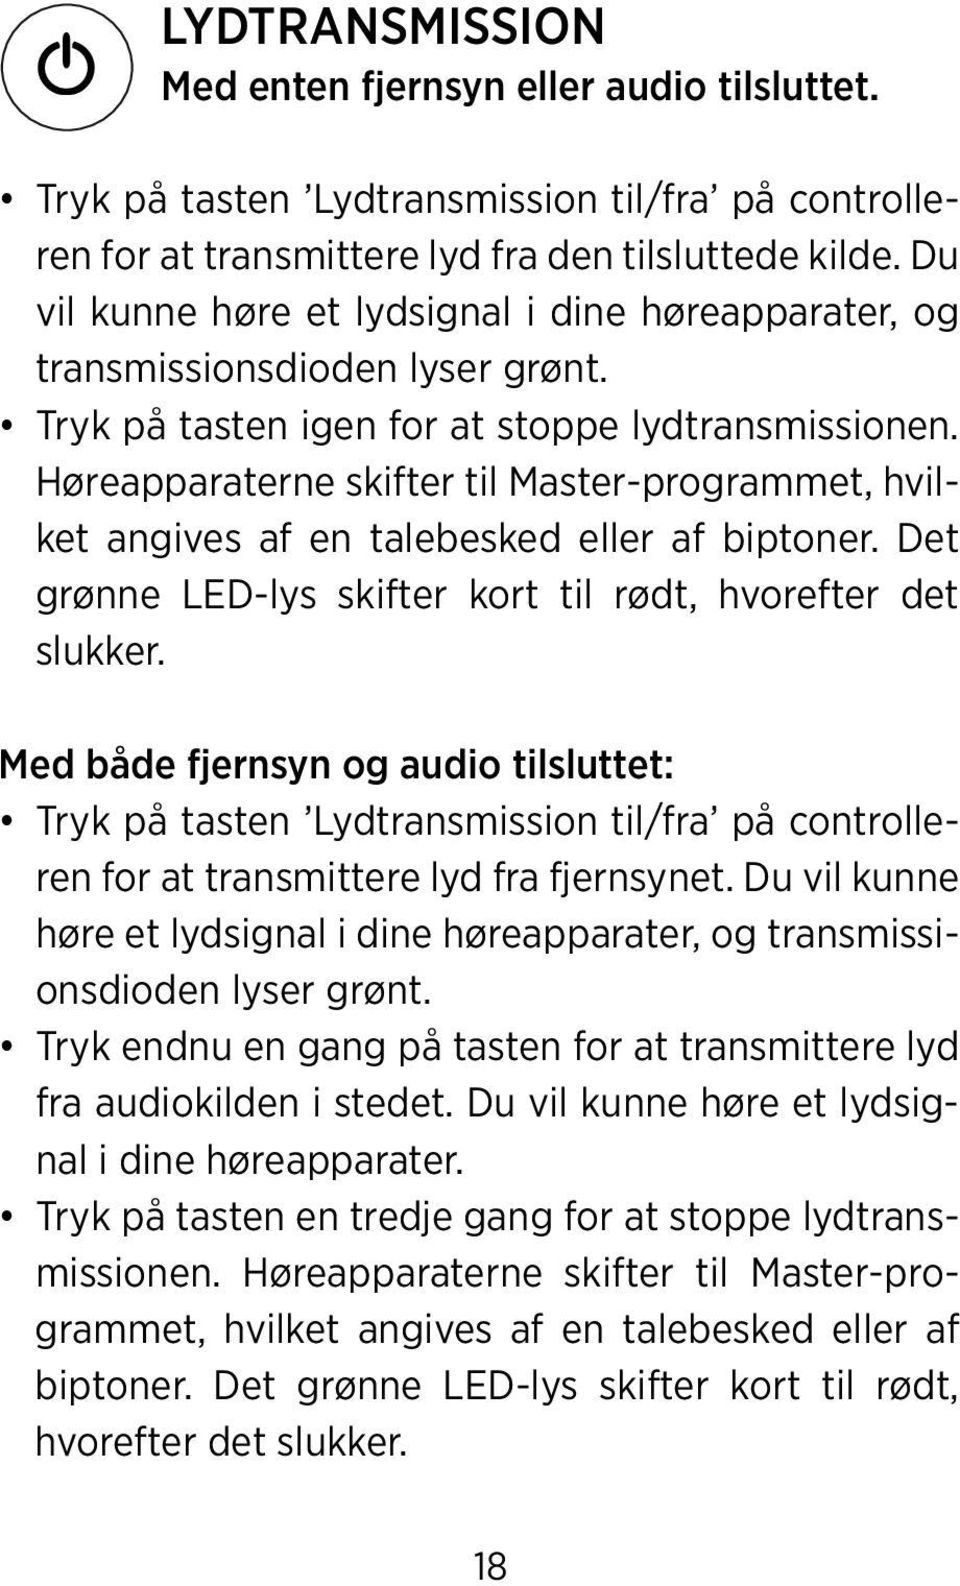 Høreapparaterne skifter til Master-programmet, hvilket angives af en talebesked eller af biptoner. Det grønne LED-lys skifter kort til rødt, hvorefter det slukker.